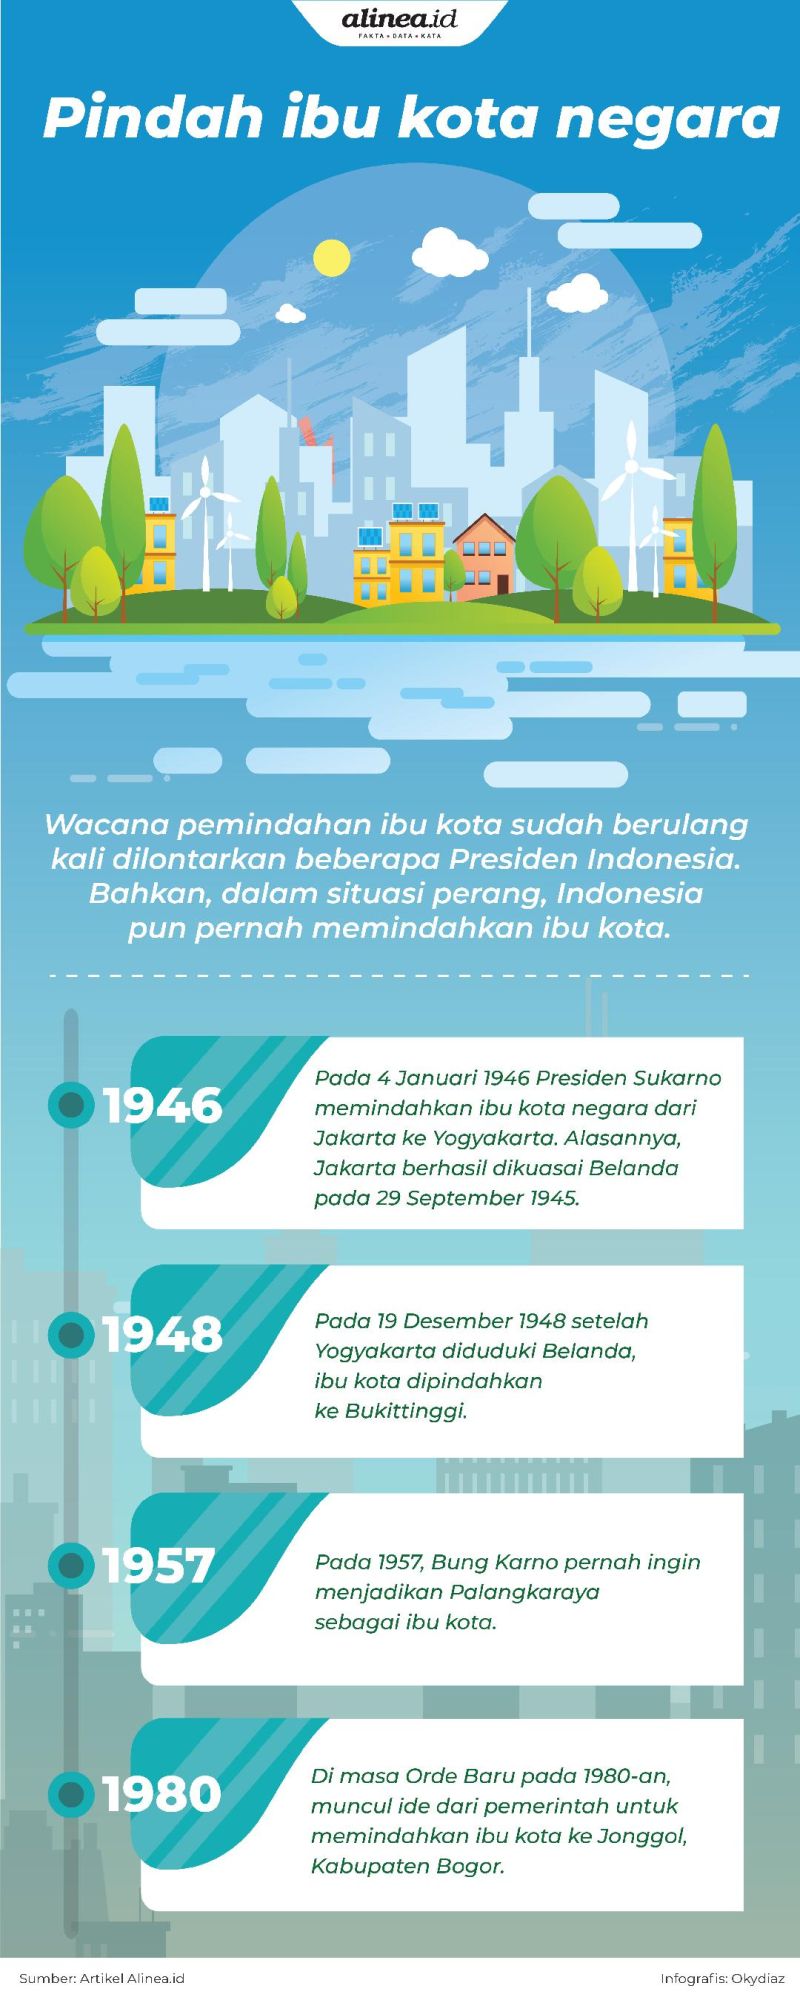 Sejak masa Sukarno sudah ada wacana pemindahan ibu kota.